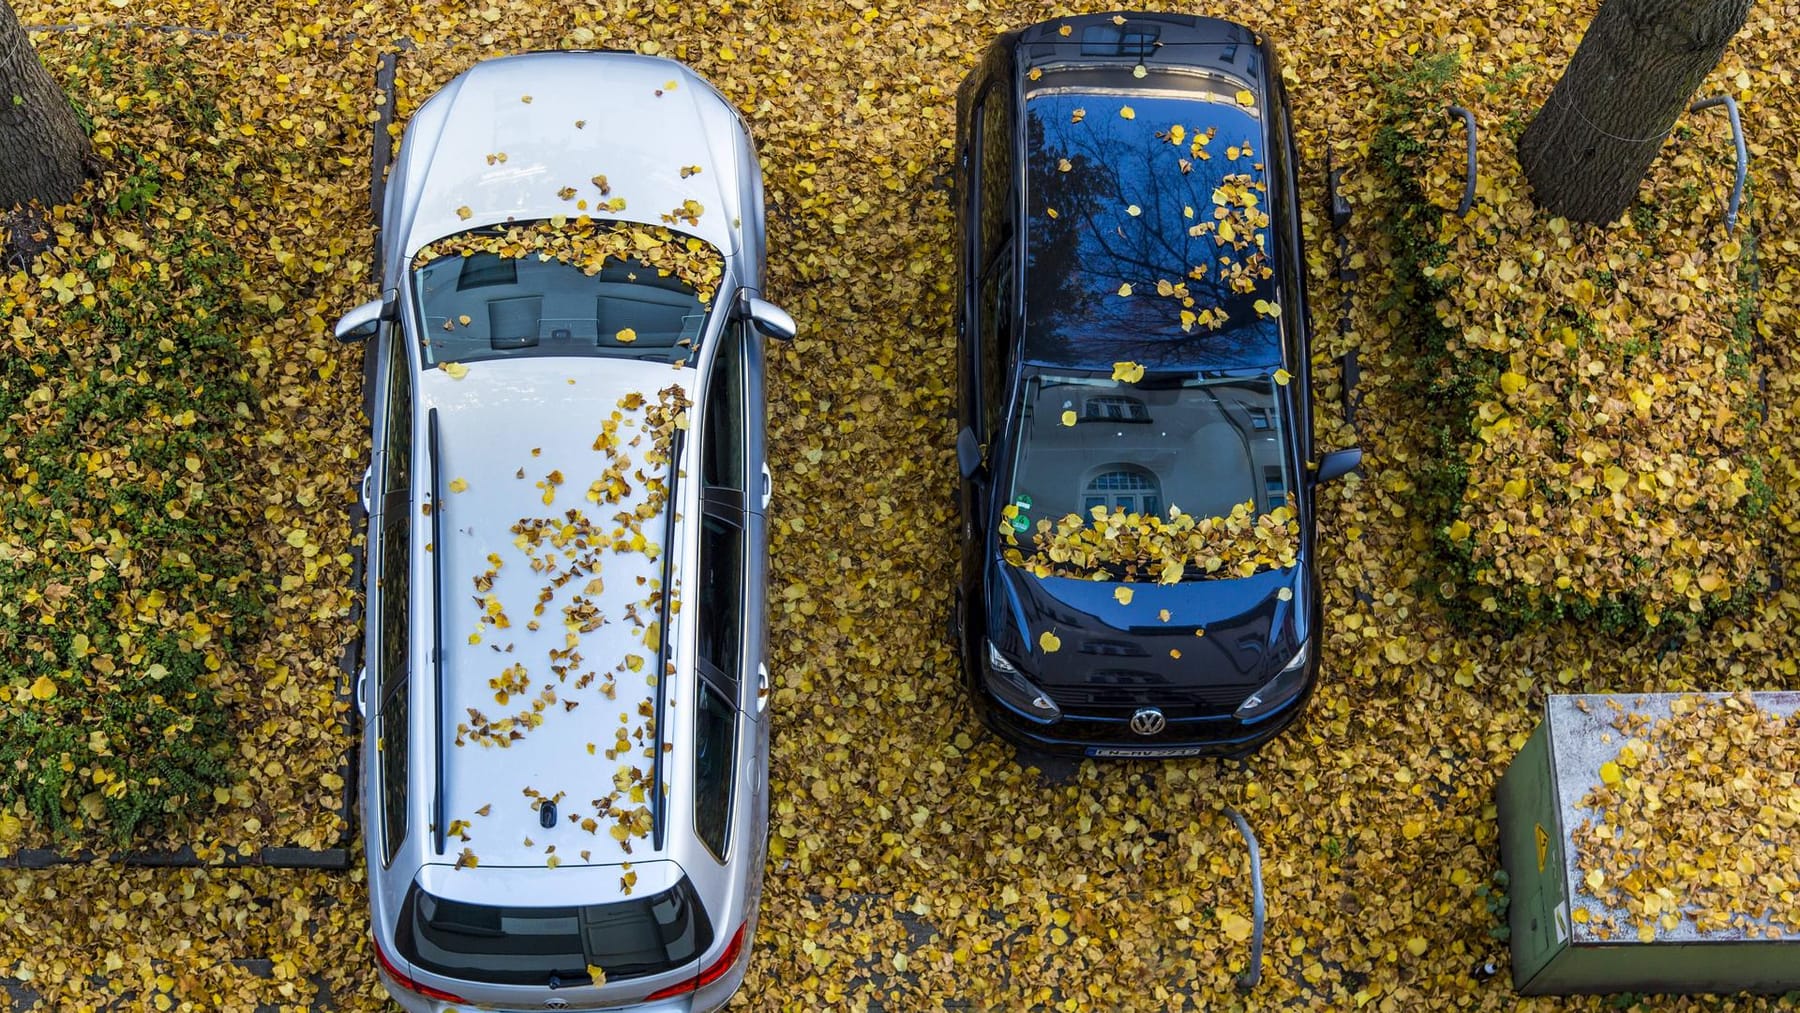 Auto mit klebriger Schicht überzogen: Das hilft gegen Honigtau